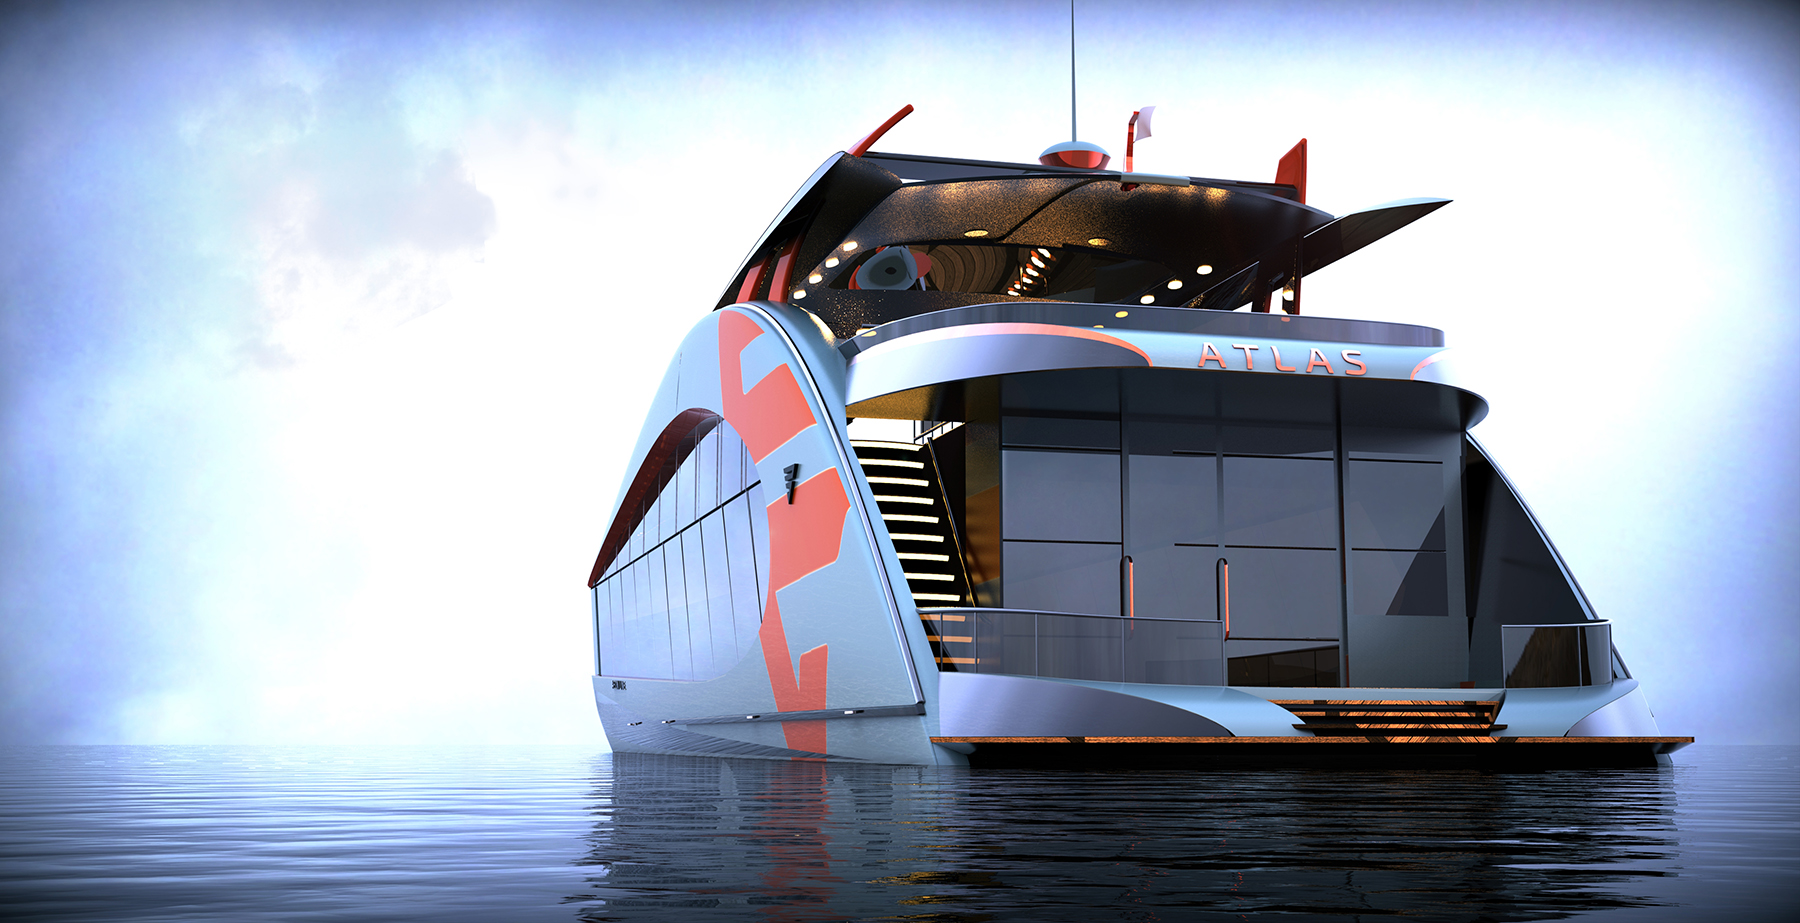 Bravada Yachts - Luxury Lake Houseboats